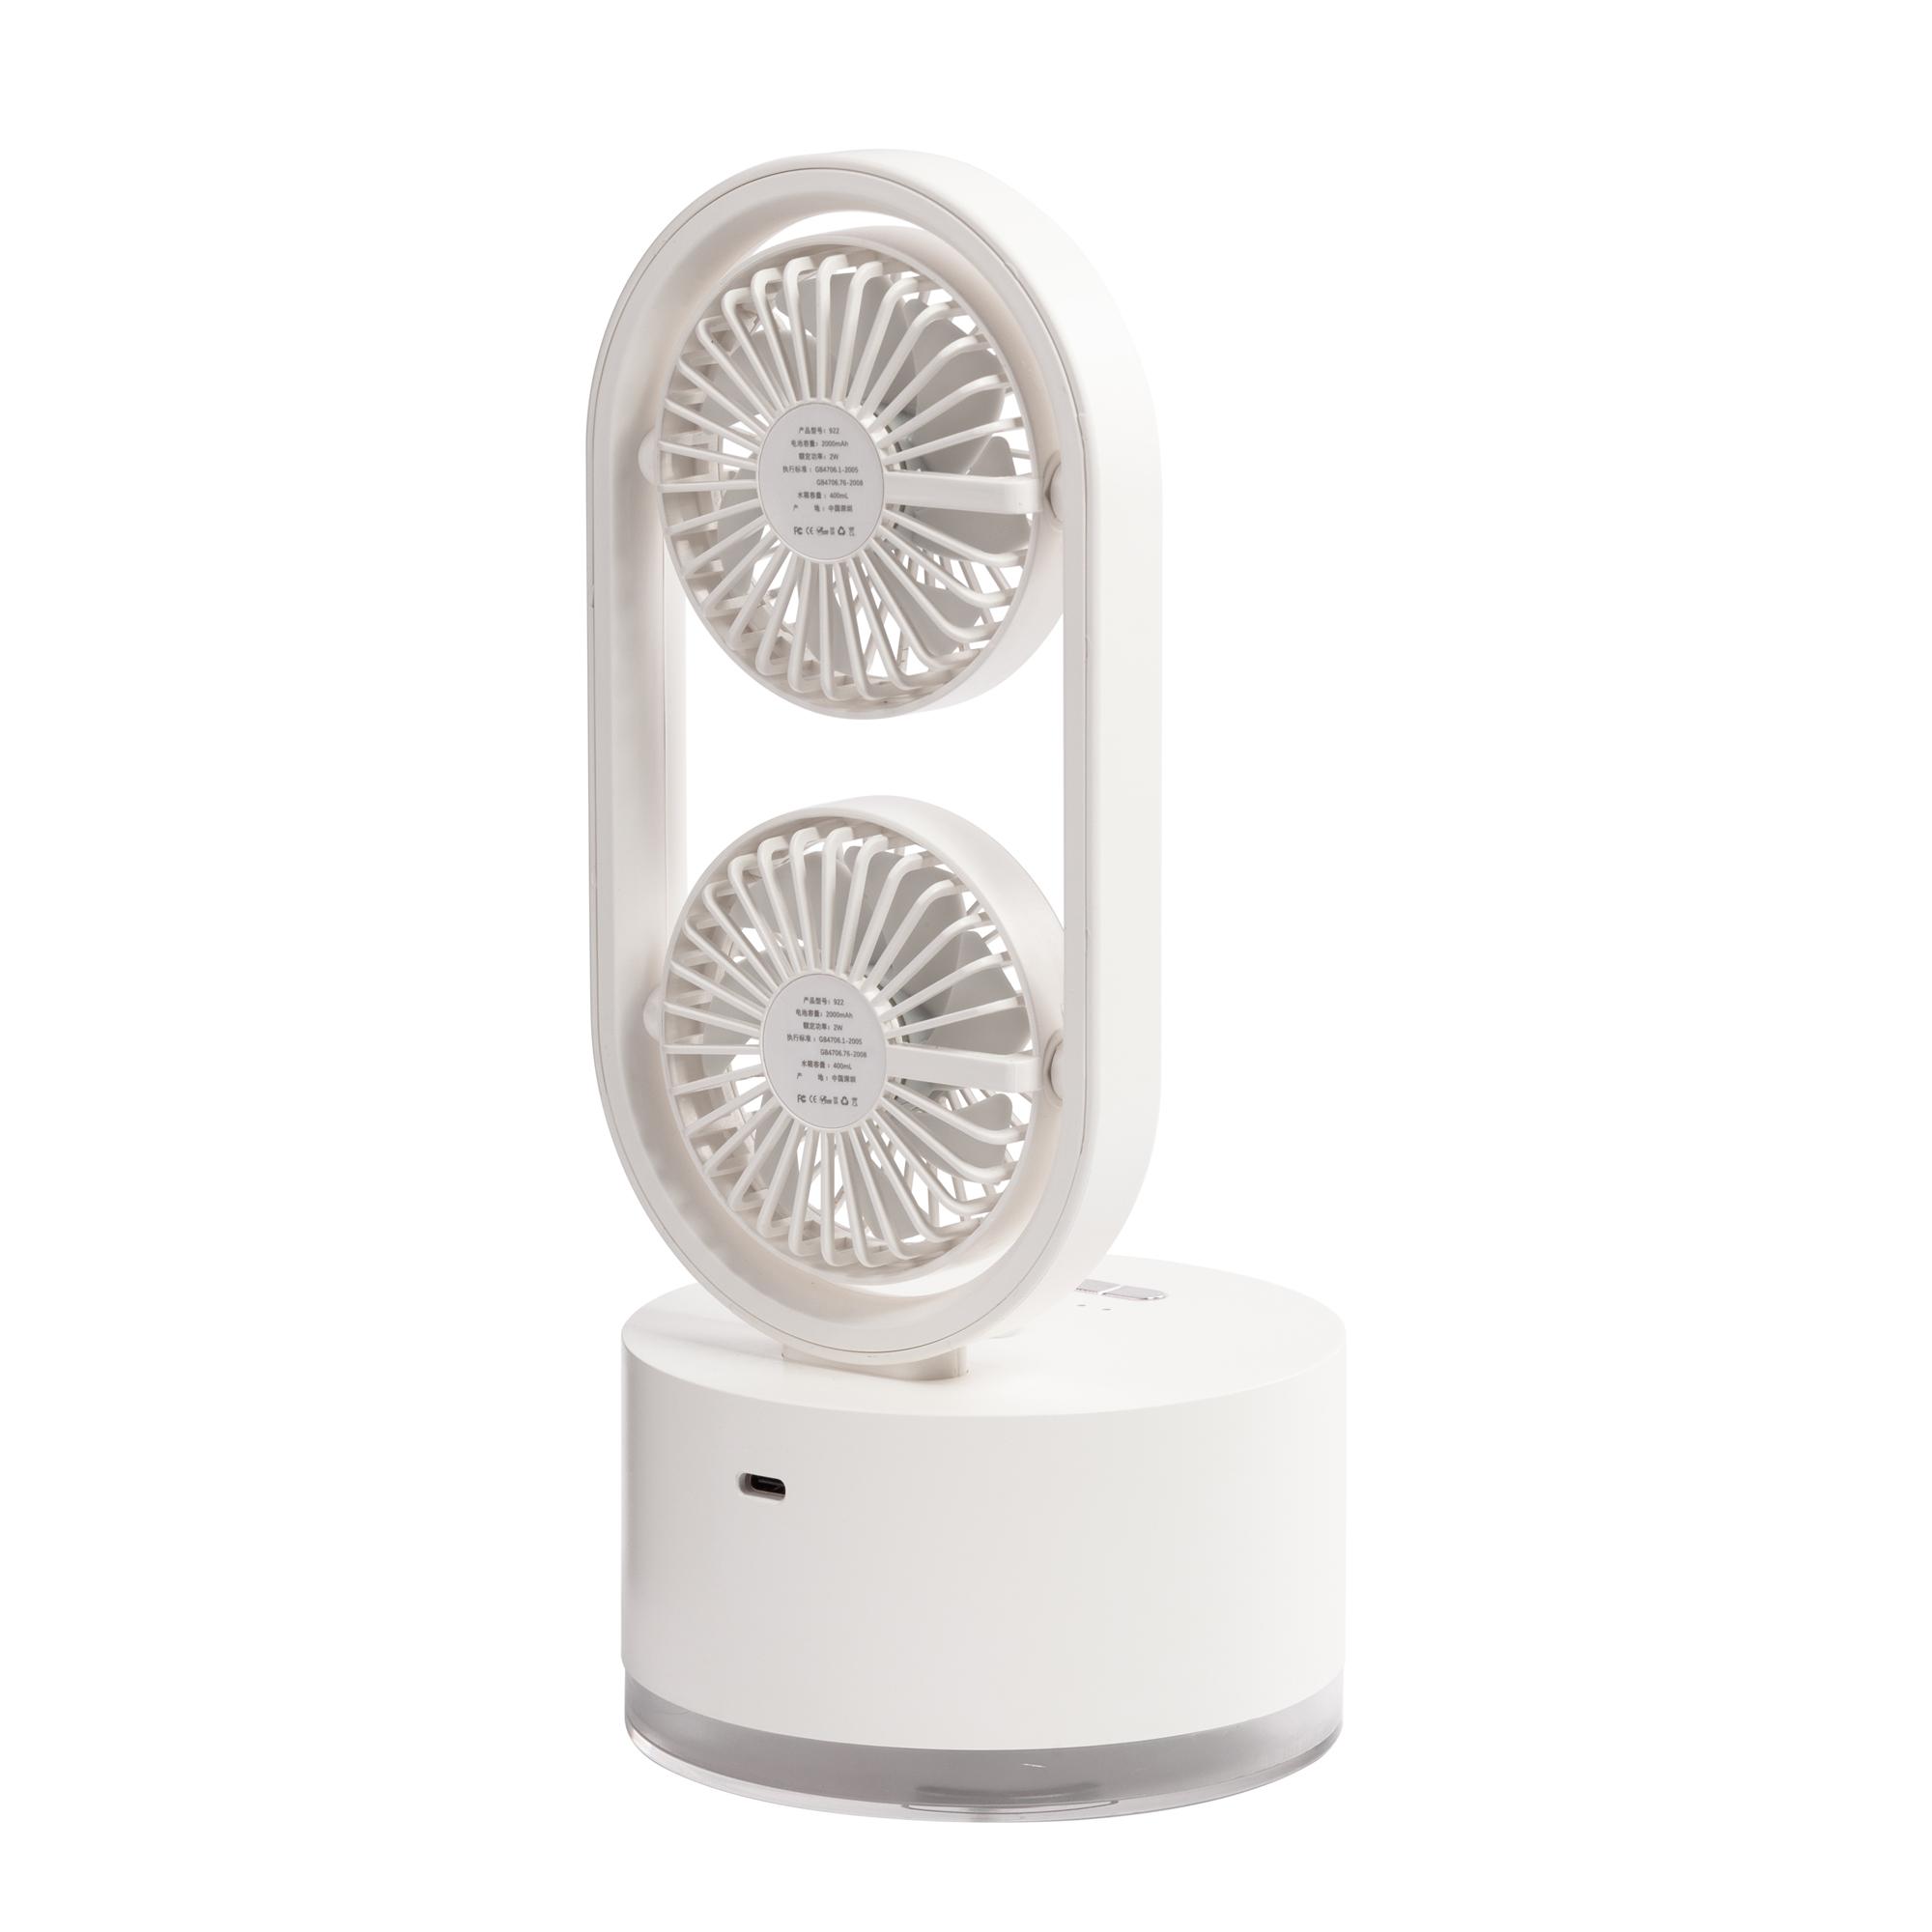 Портативный увлажнитель воздуха "Smart Wind" с двумя вентиляторами, цвет белый, фото 3